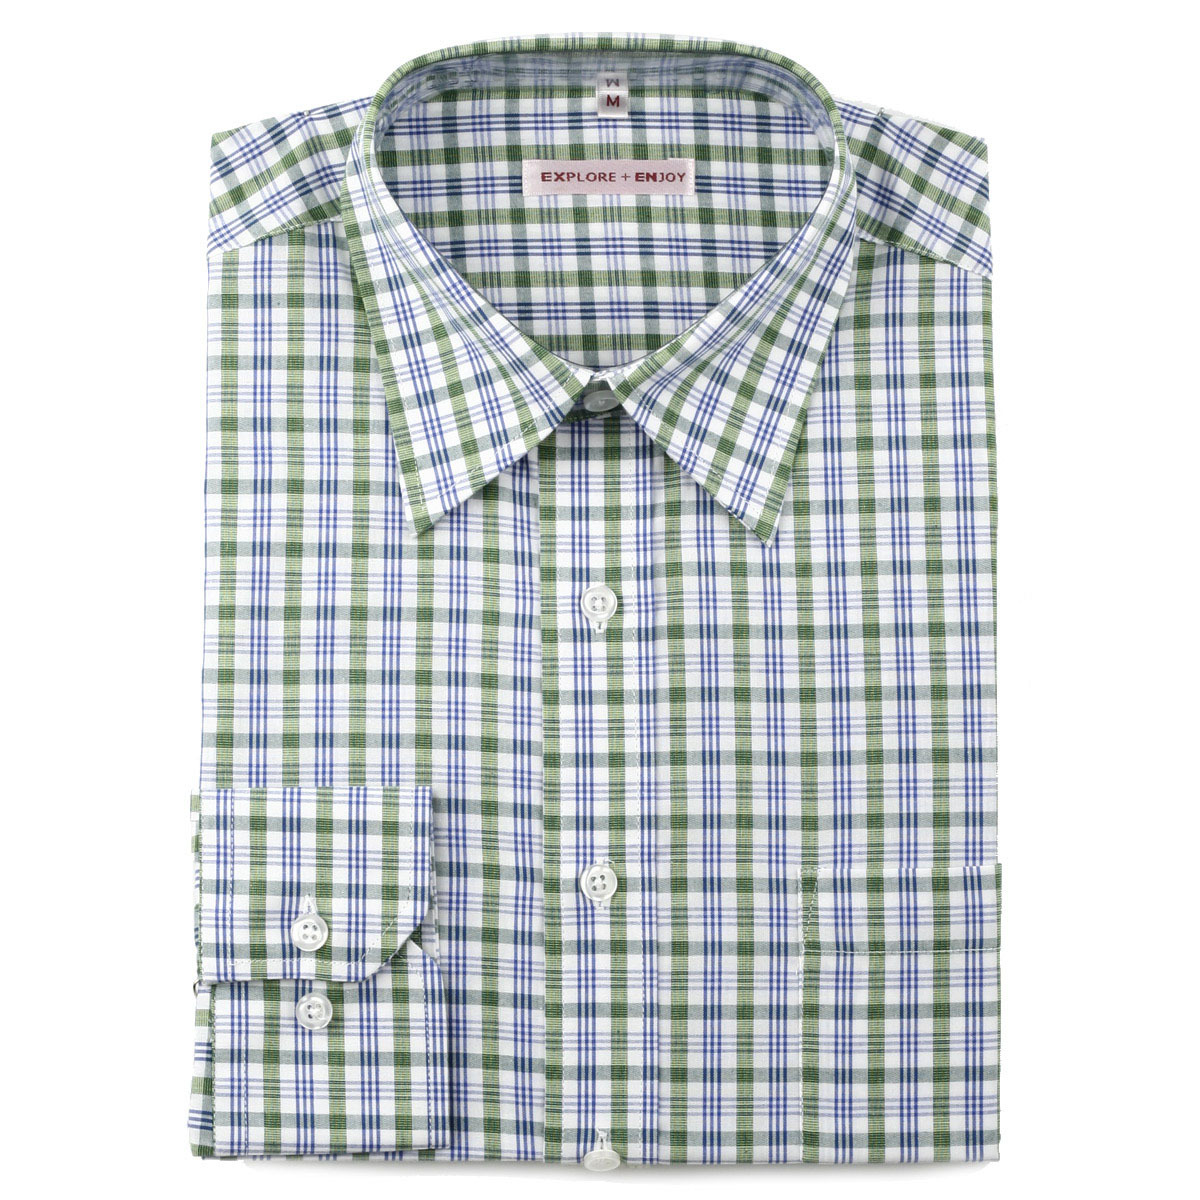 外贸商务休闲衬衫 40支全棉男士长袖衬衫 宽松型 S07绿蓝条纹格